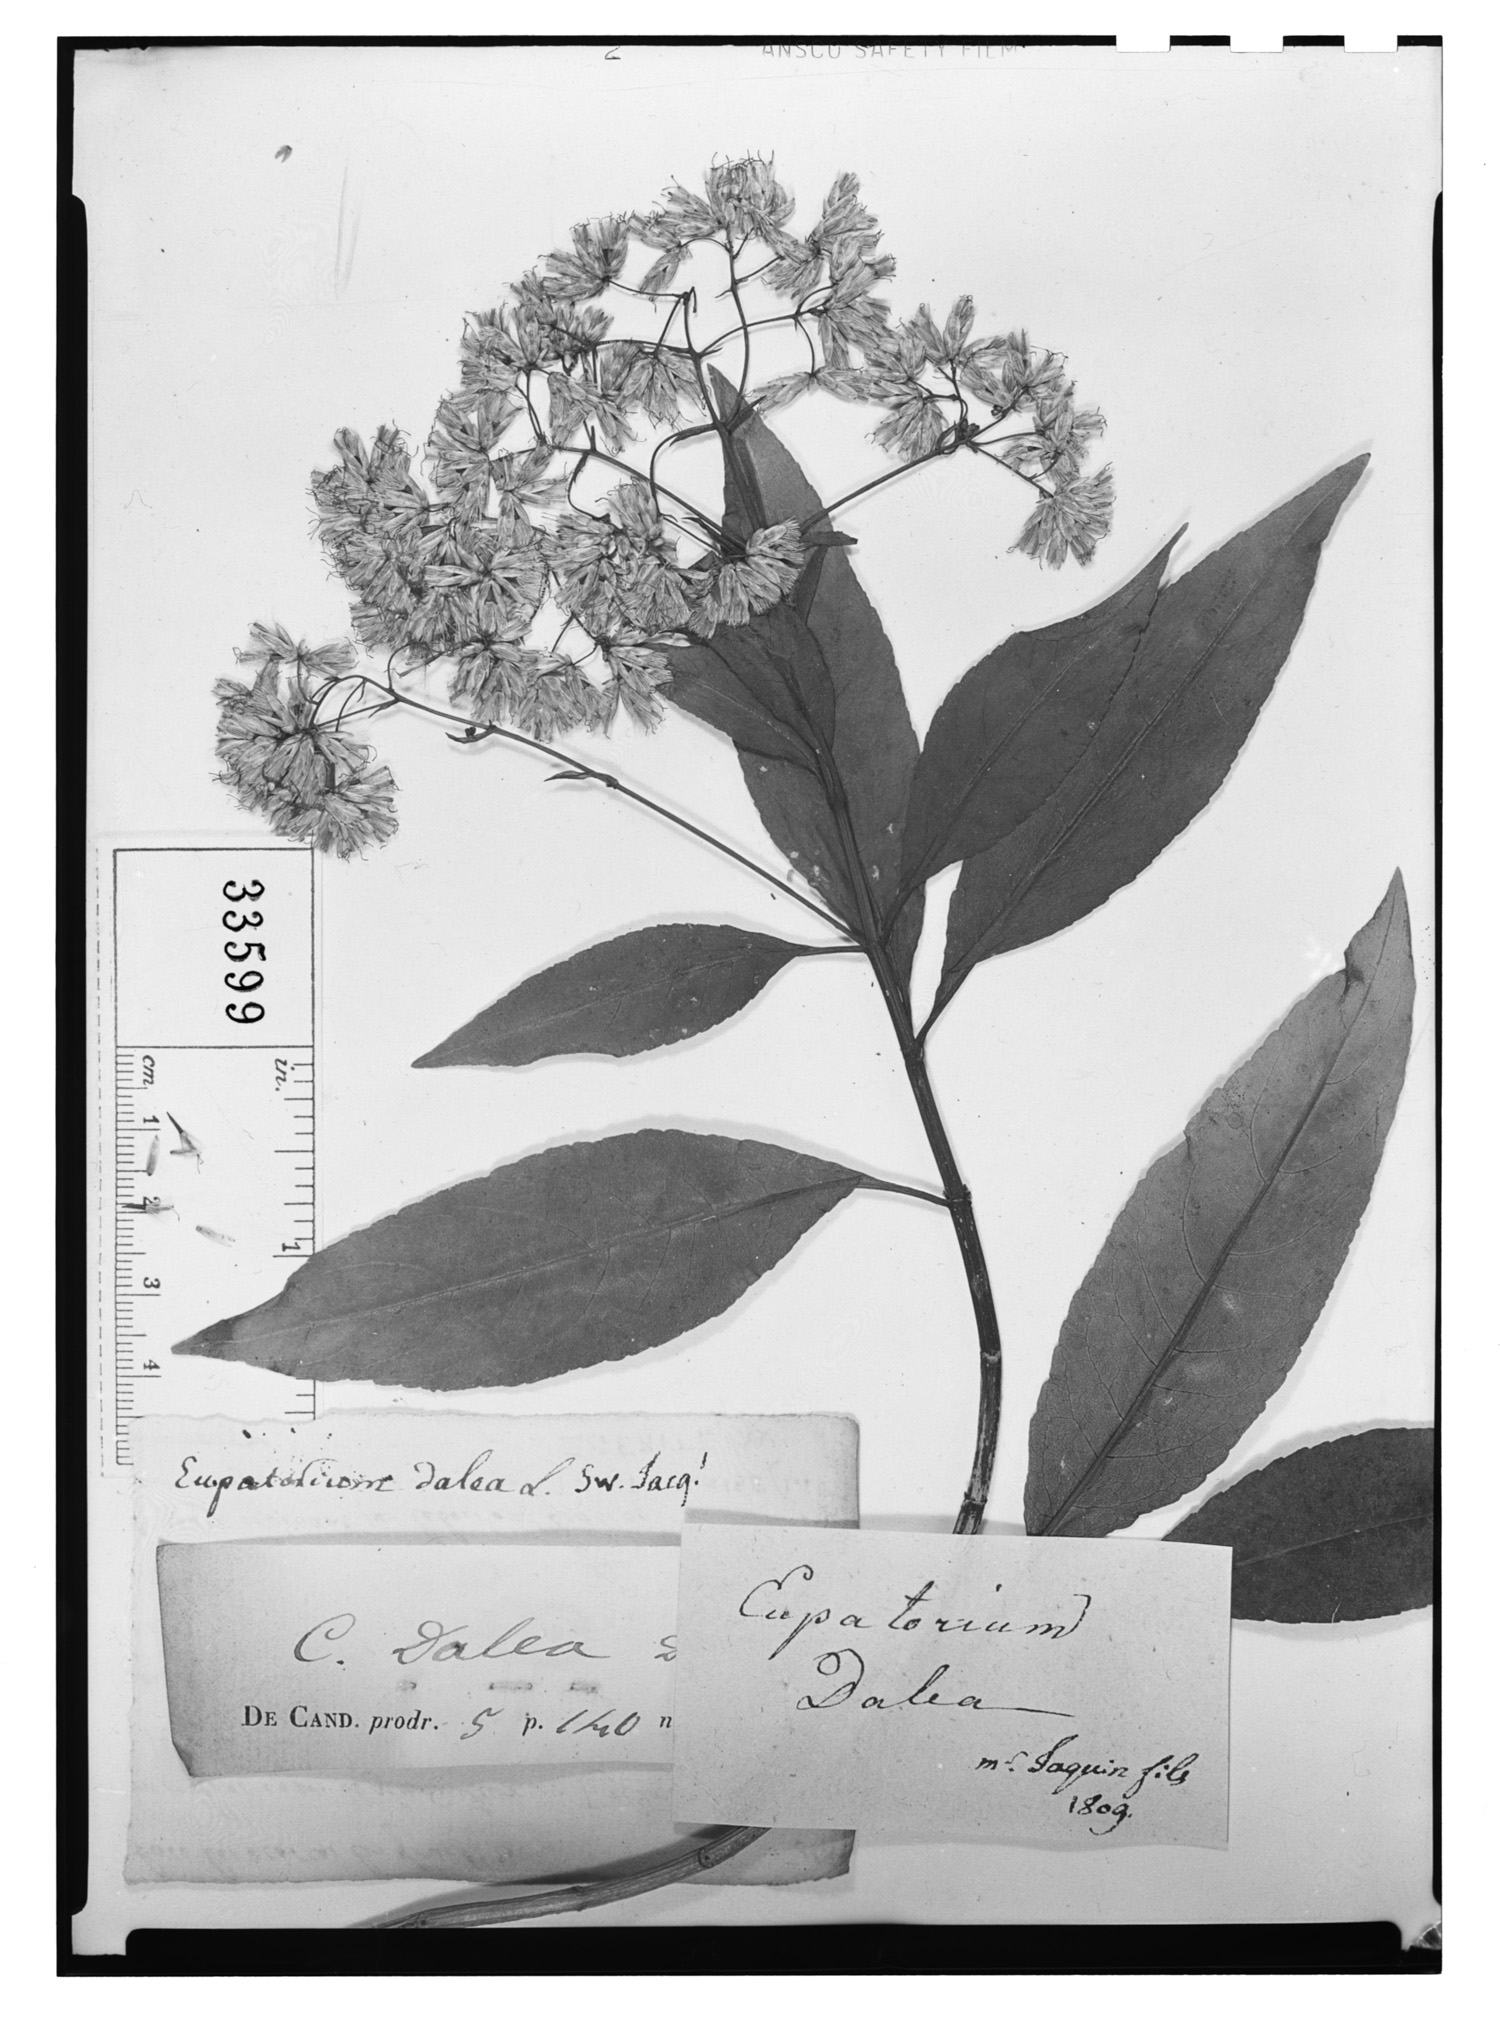 Critonia pseudodalea image